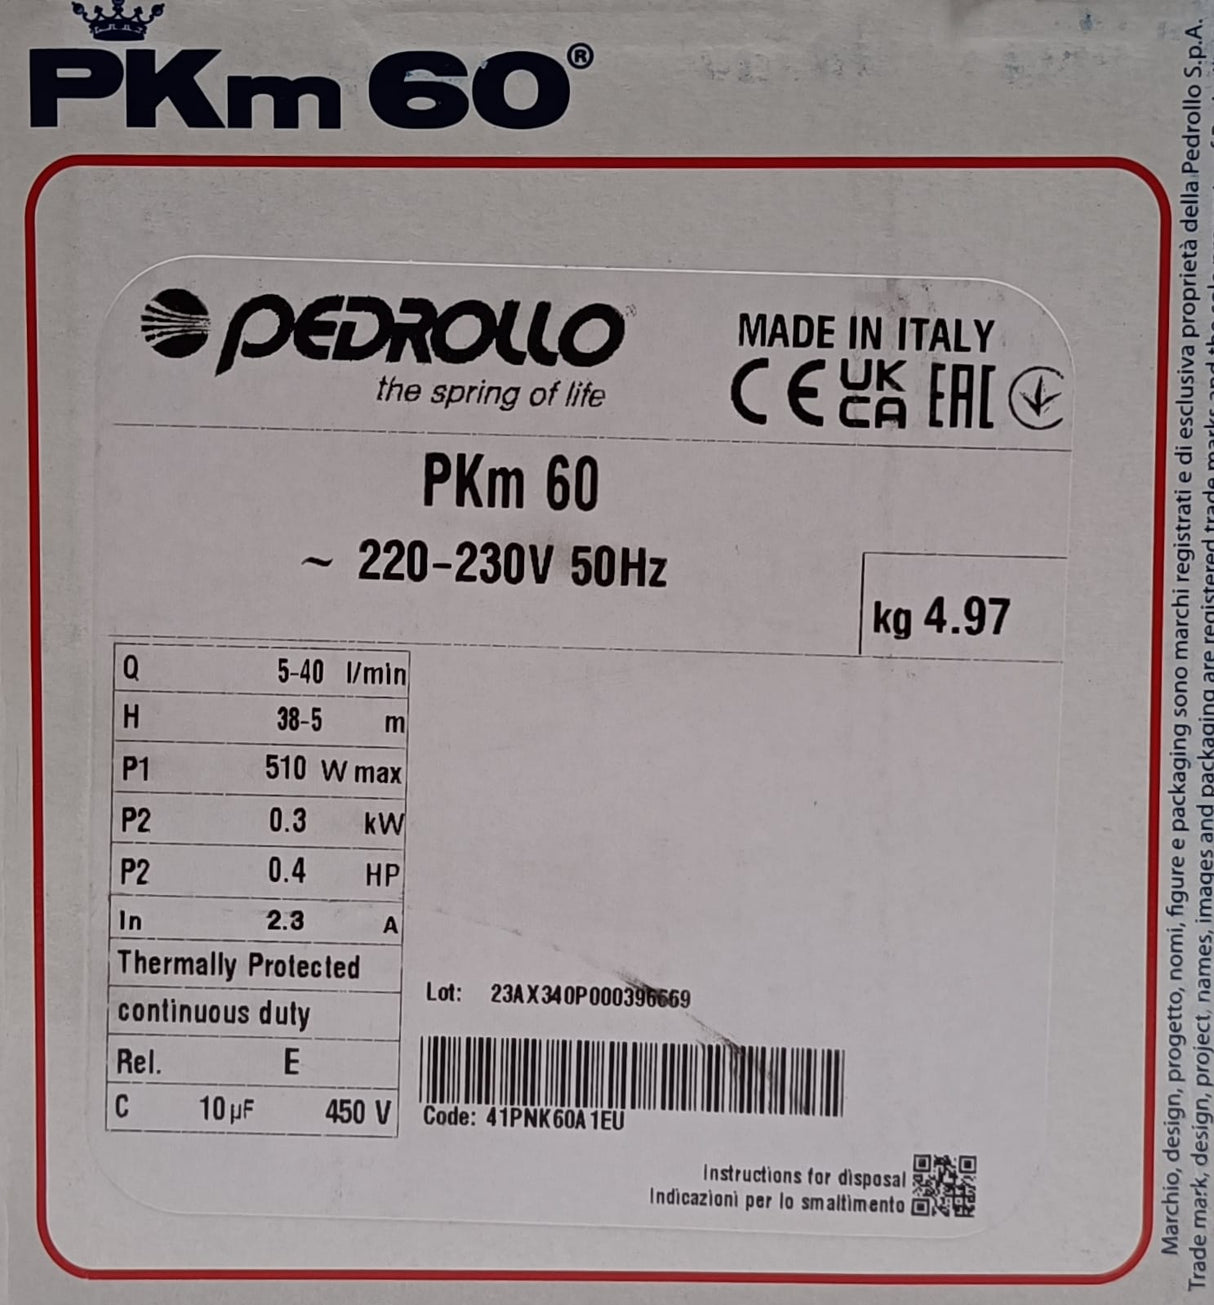 Elettropompa Pedrollo PKm 60 HP 0,40 con girante periferica monofase